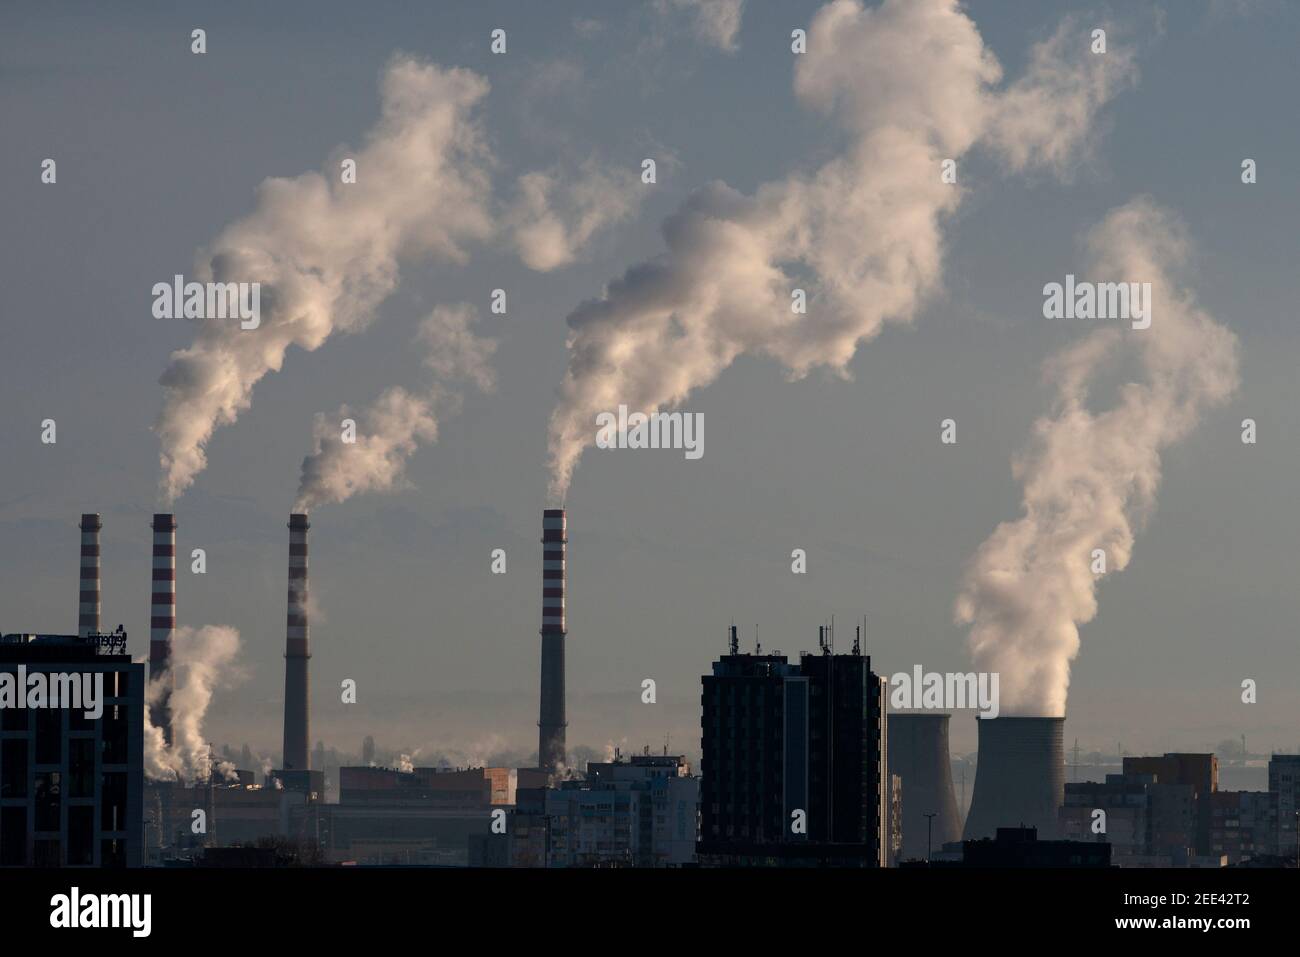 Verschmutzungskonzept Gegenüberstellung von Rauchschornsteinen, rauchenden Schornsteinen und dunklen Gebäuden in Sofia Bulgarien Osteuropa EU ab Januar 2021 Stockfoto